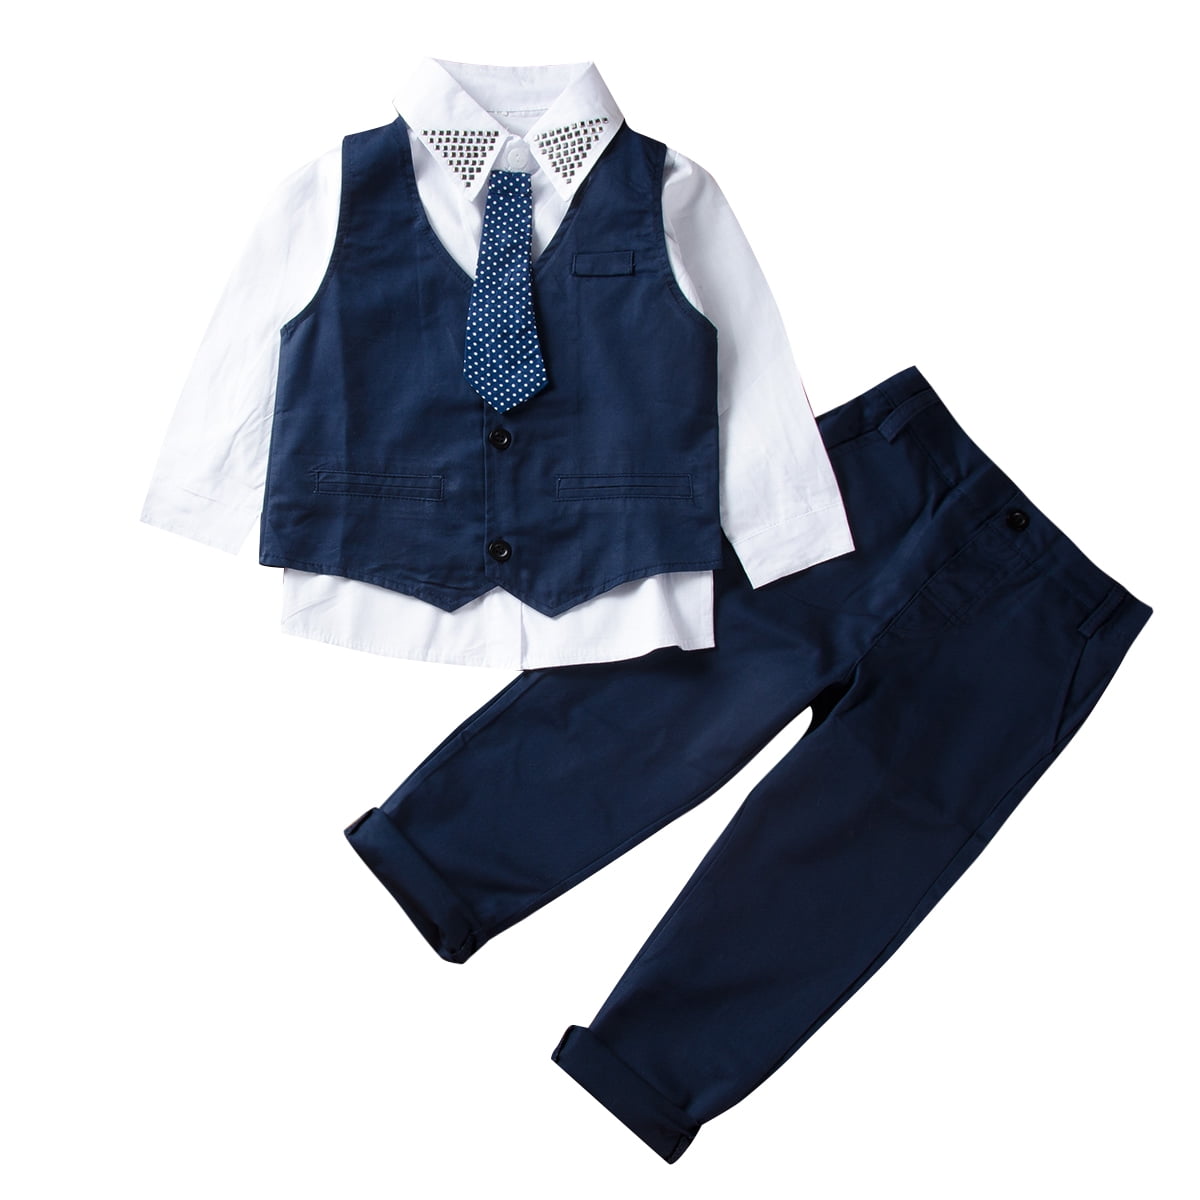 Baby Boys Kids Gentleman Outfits Suit Coat Tie Shirt Pants 3/4pcs Set Clothes